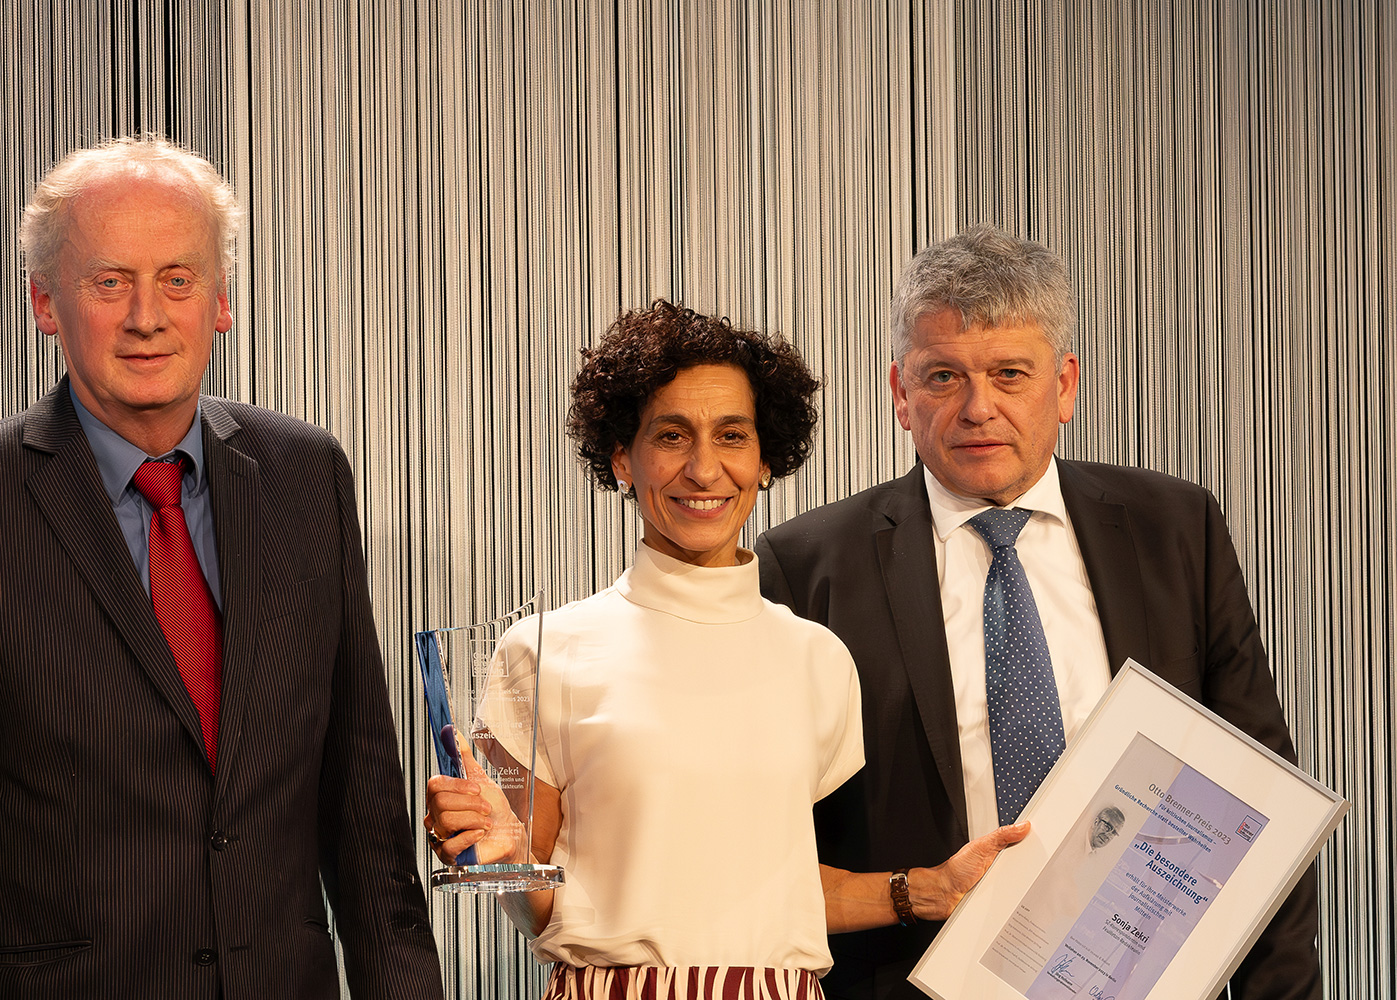 Sonja Zekri erhält in diesem Jahr „Die besondere Auszeichnung“ für ihre außergewöhnliche journalistische Arbeit. Mit der glücklichen Preisträgerin freuen sich Jurymitglied Harald Schumann und OBS-Geschäftsführer Jupp Legrand.